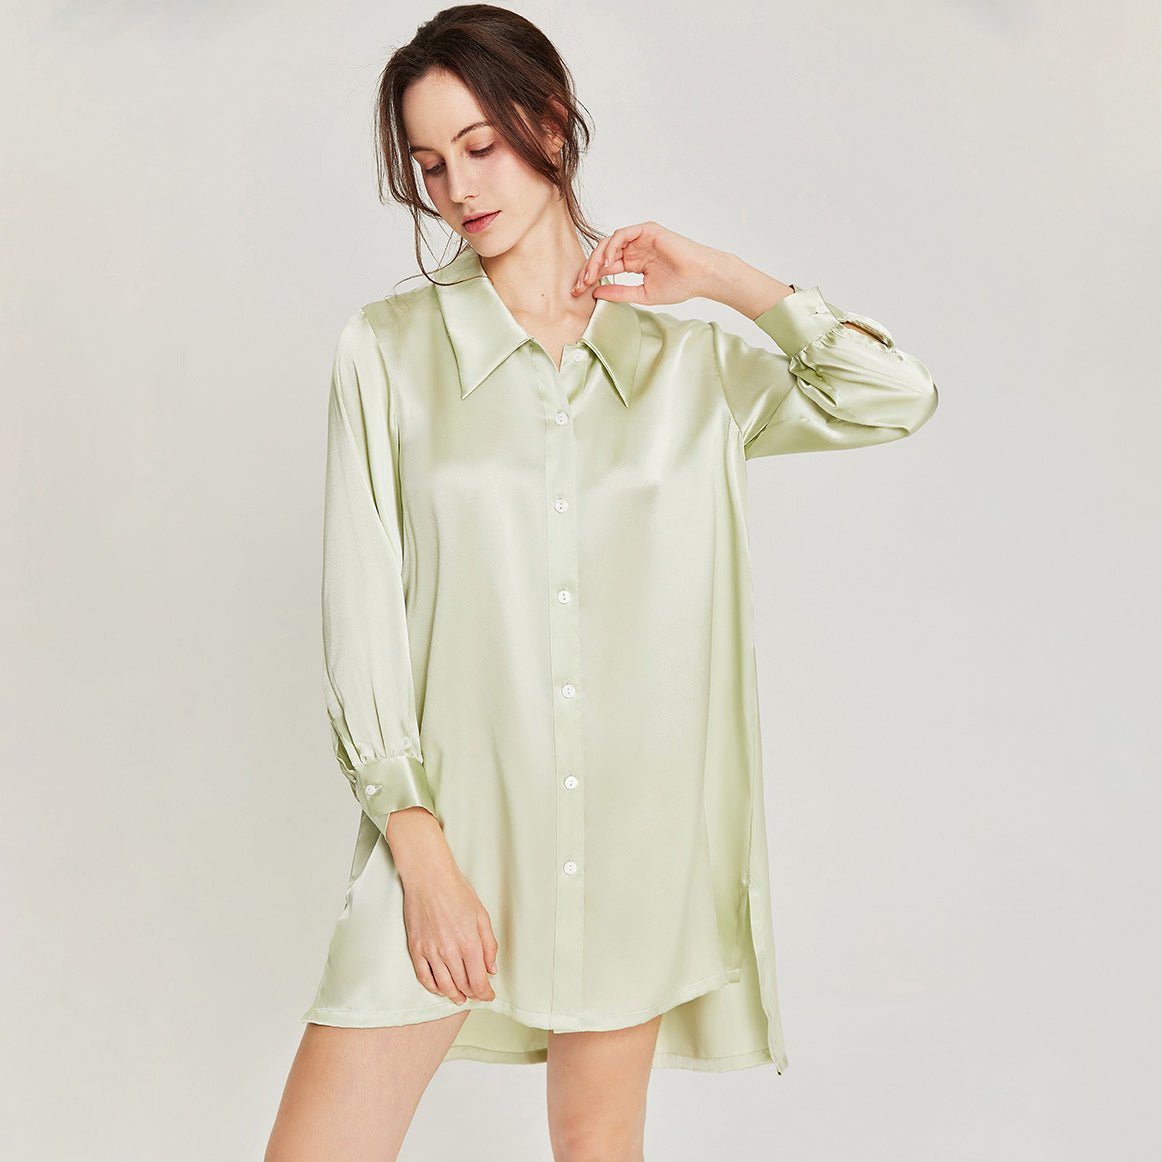 Women Classical Silk Sleep Shirt 100% Mulberry Silk Nightgown Sleep Dress - slipintosoft